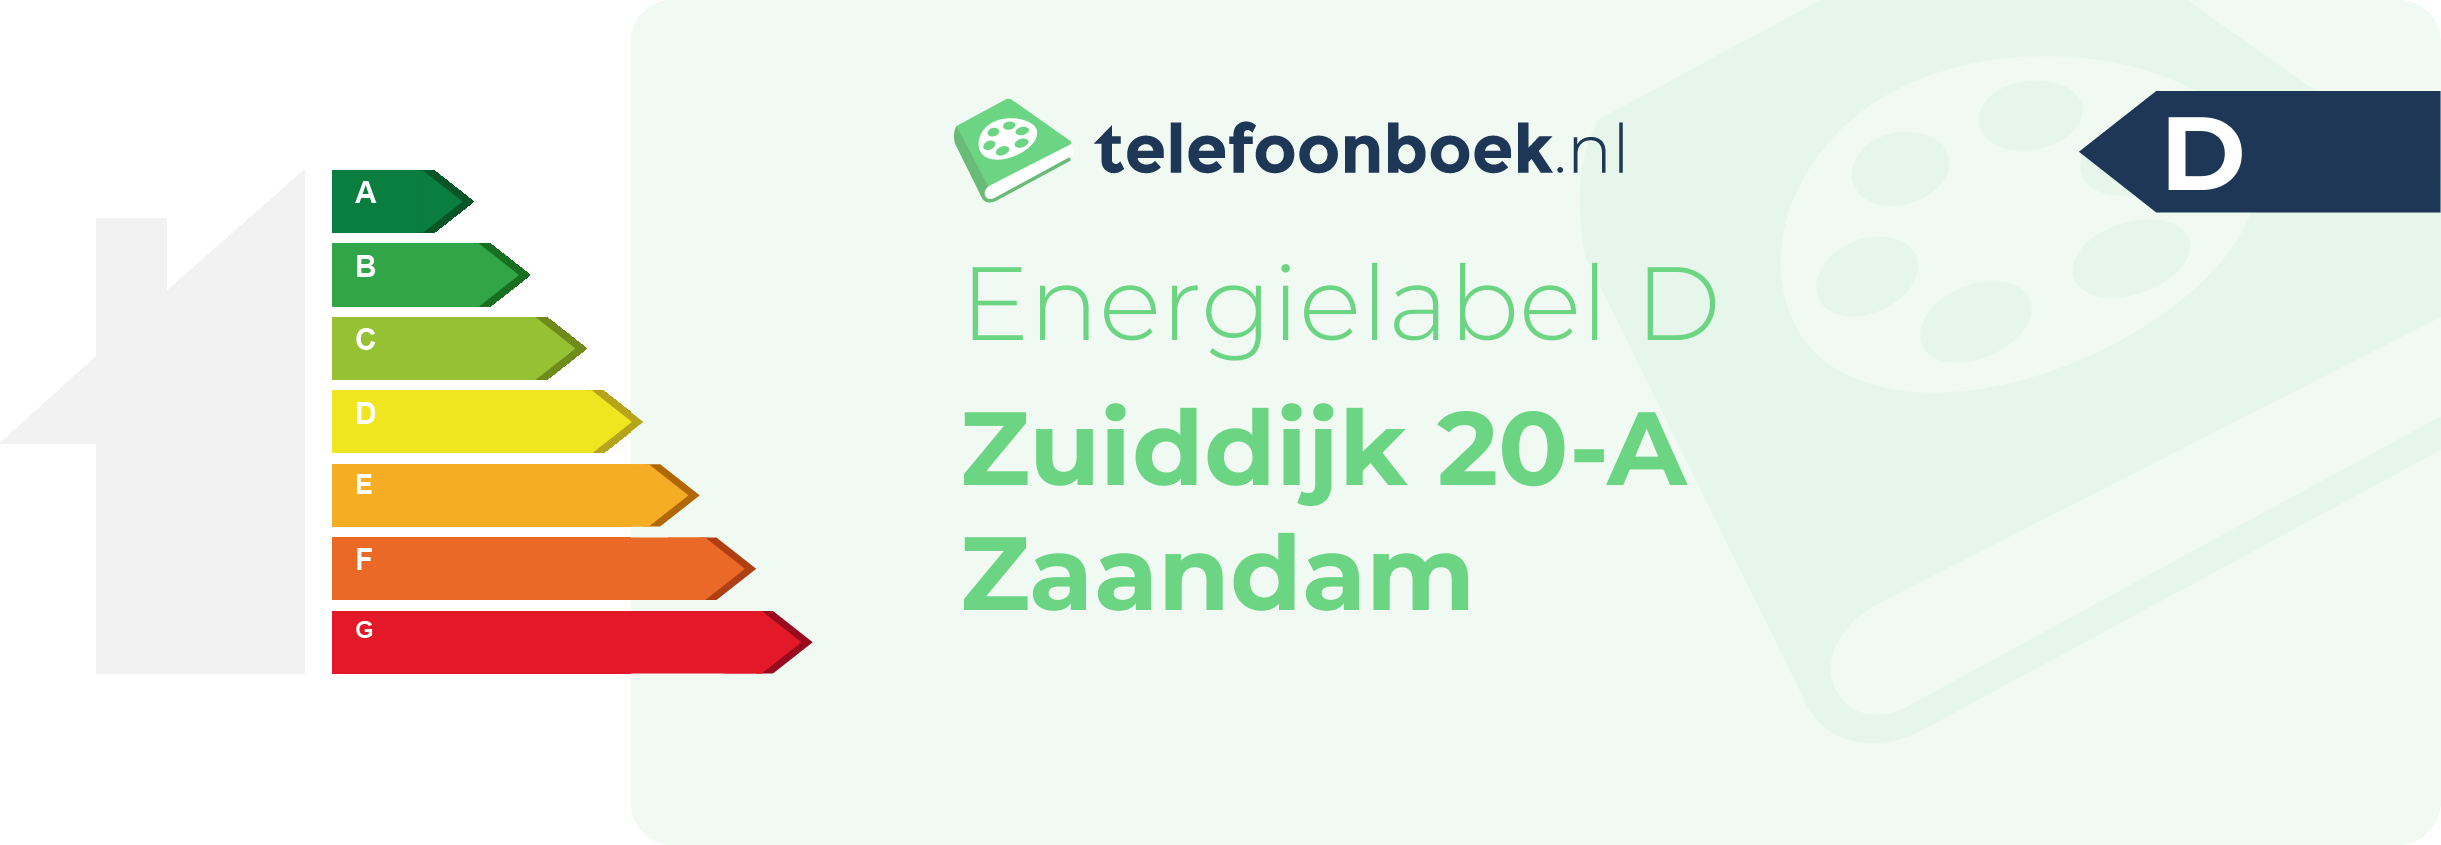 Energielabel Zuiddijk 20-A Zaandam